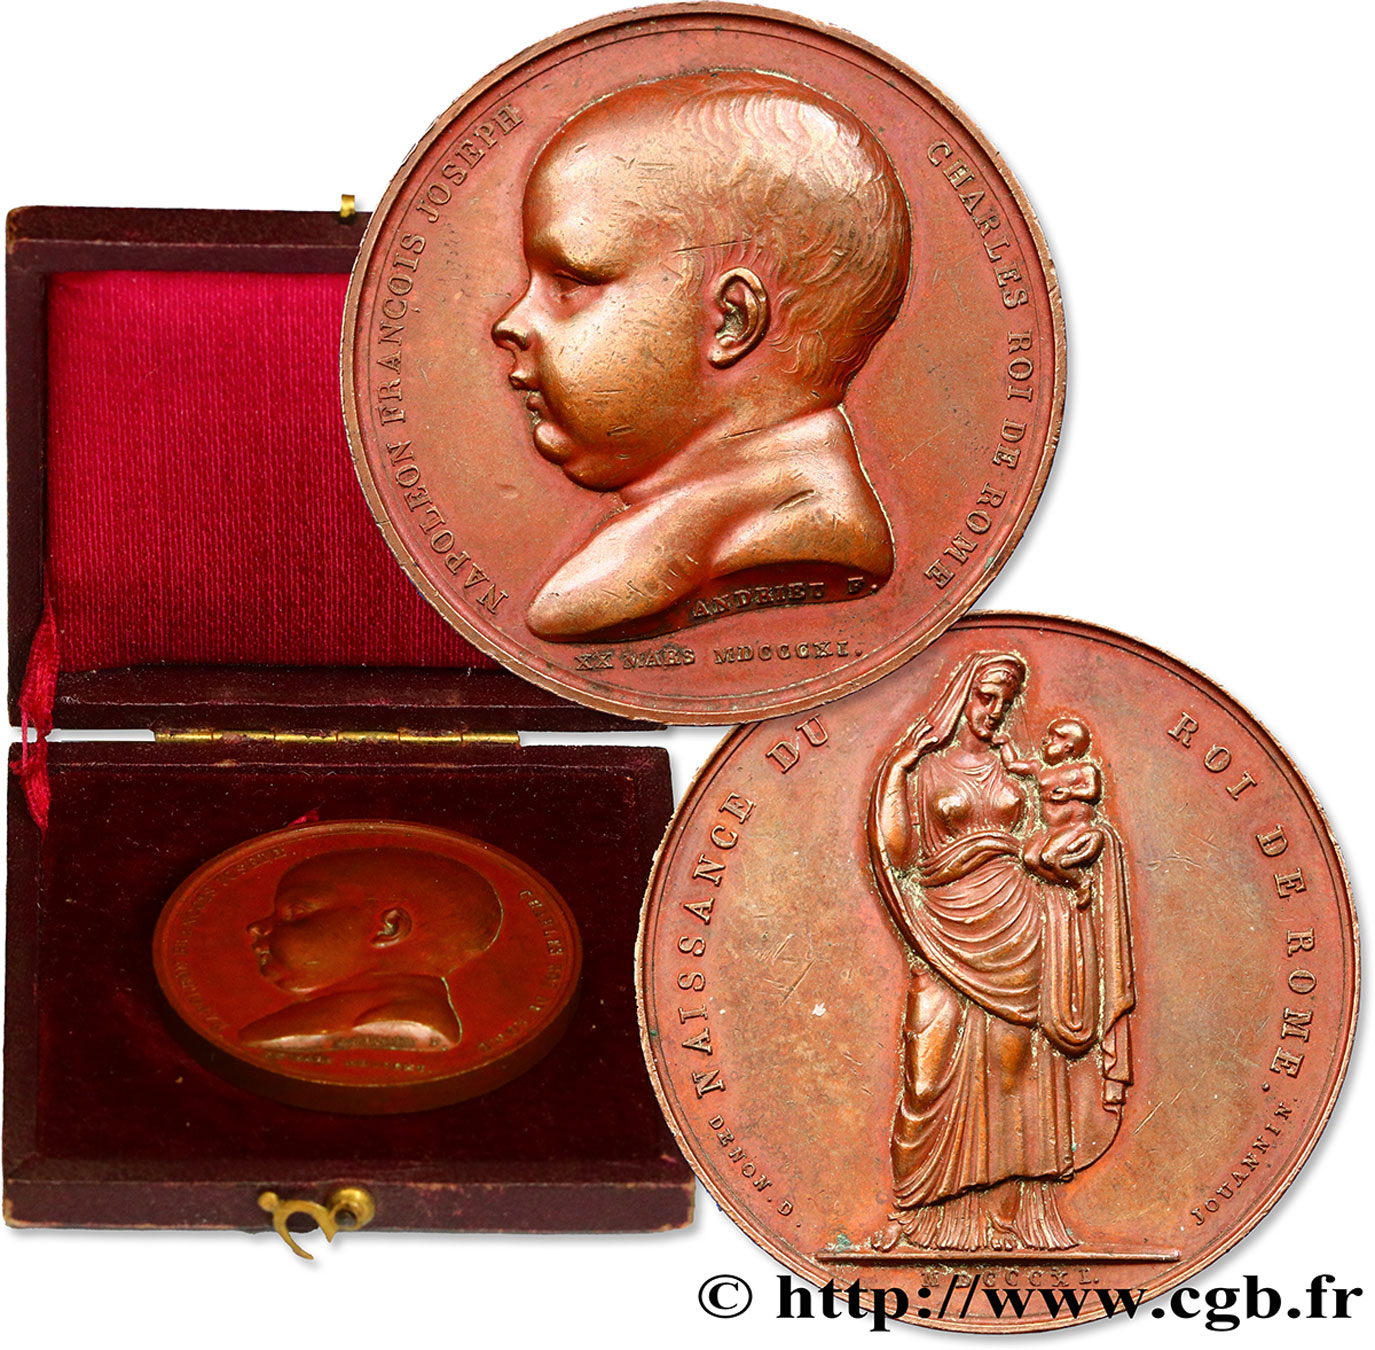 PREMIER EMPIRE / FIRST FRENCH EMPIRE Médaille pour la naissance du Roi de Rome AU